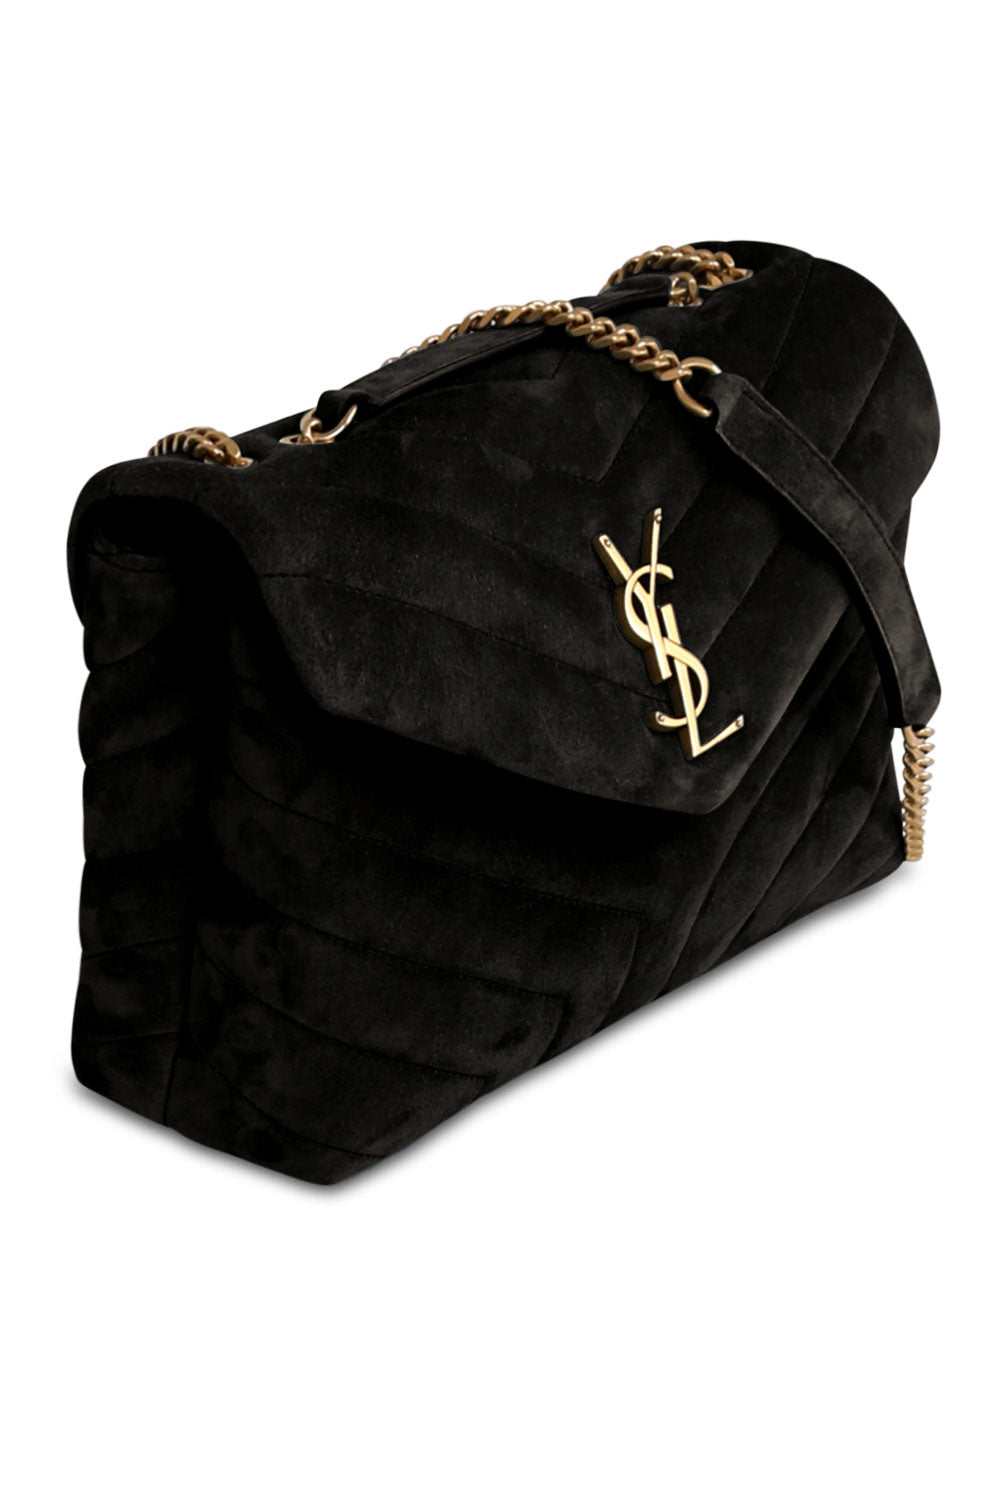 SAINT LAURENT BAGS BLACK LOULOU SMALL FLAP BAG SUEDE BLACK/GOLD